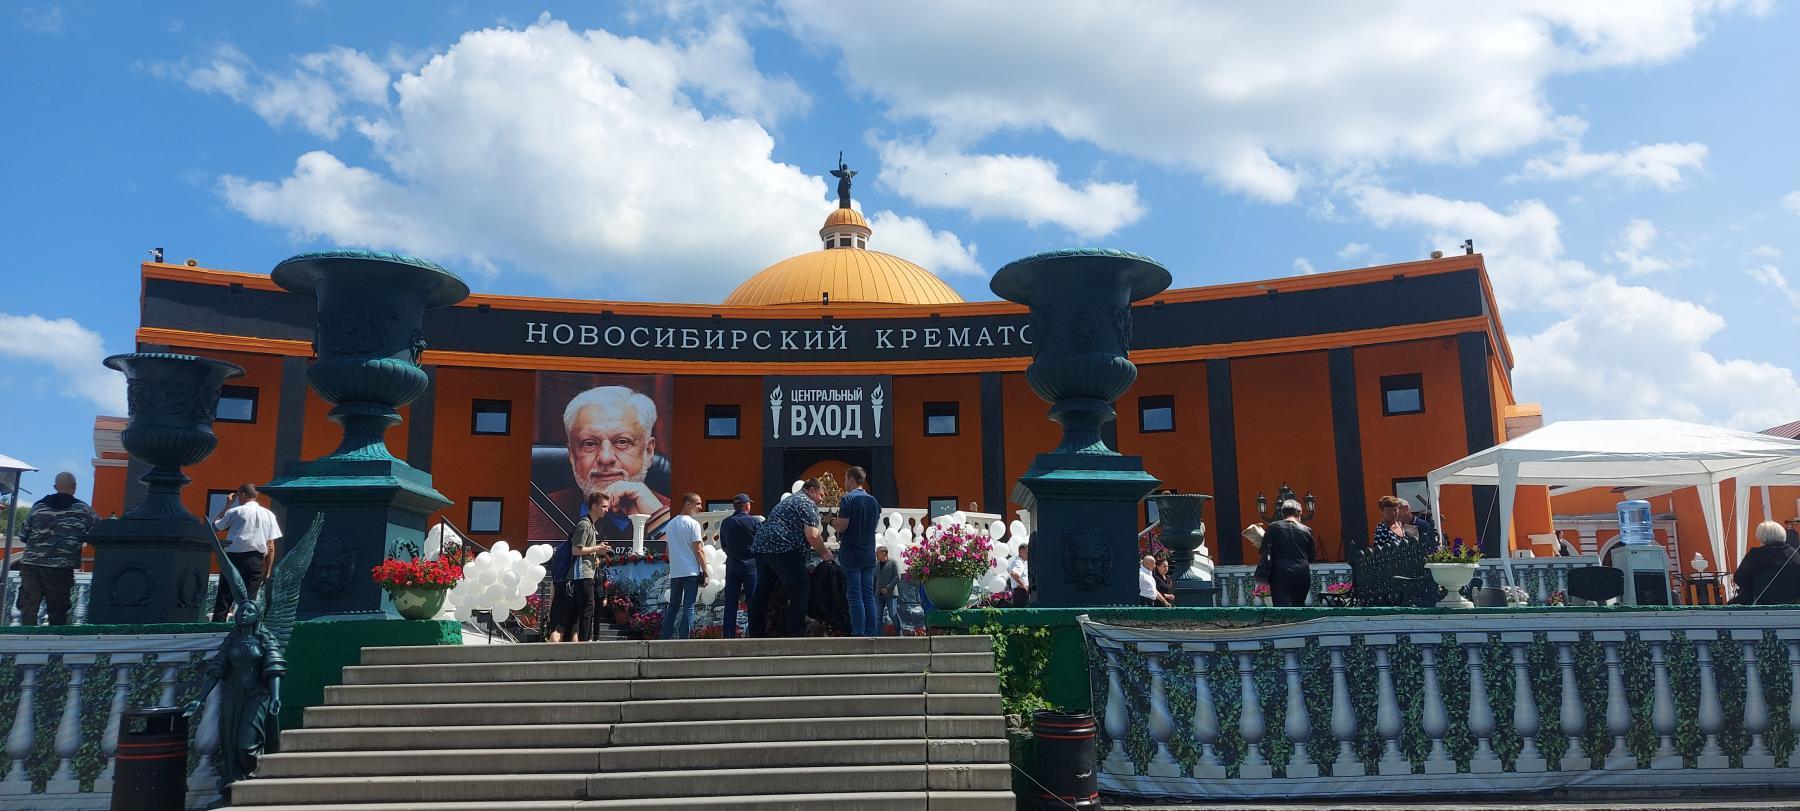 Фото В Новосибирске покойного основателя крематория «Некрополь» Якушина  продолжают судить 2